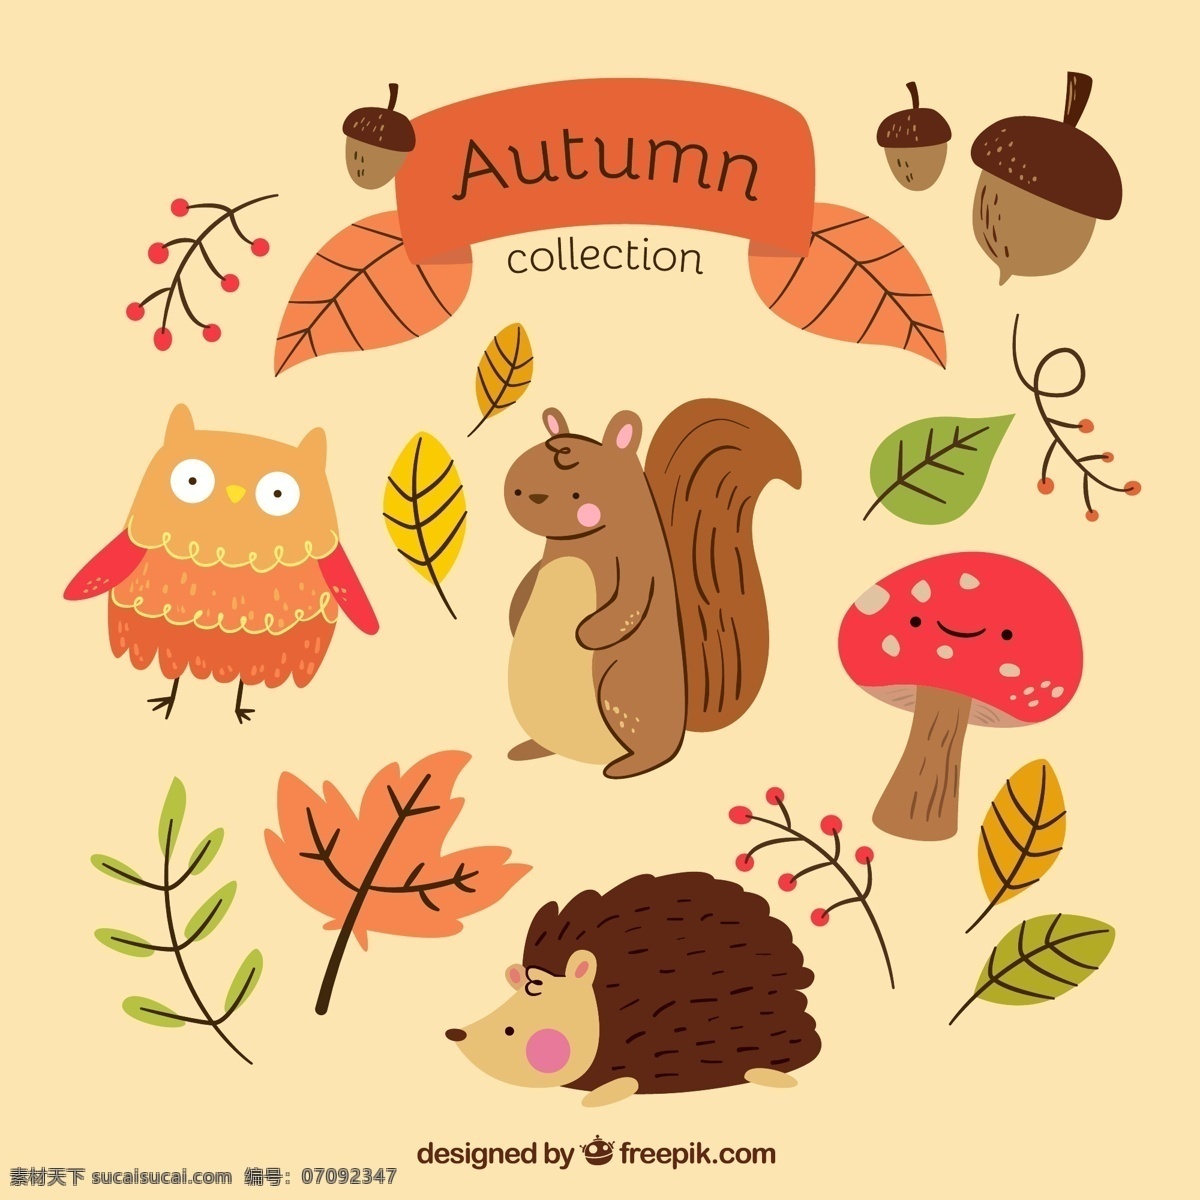 款 可爱 秋季 叶子 动物 矢量图 卡通 秋天 松鼠 刺猬 果实 蘑菇